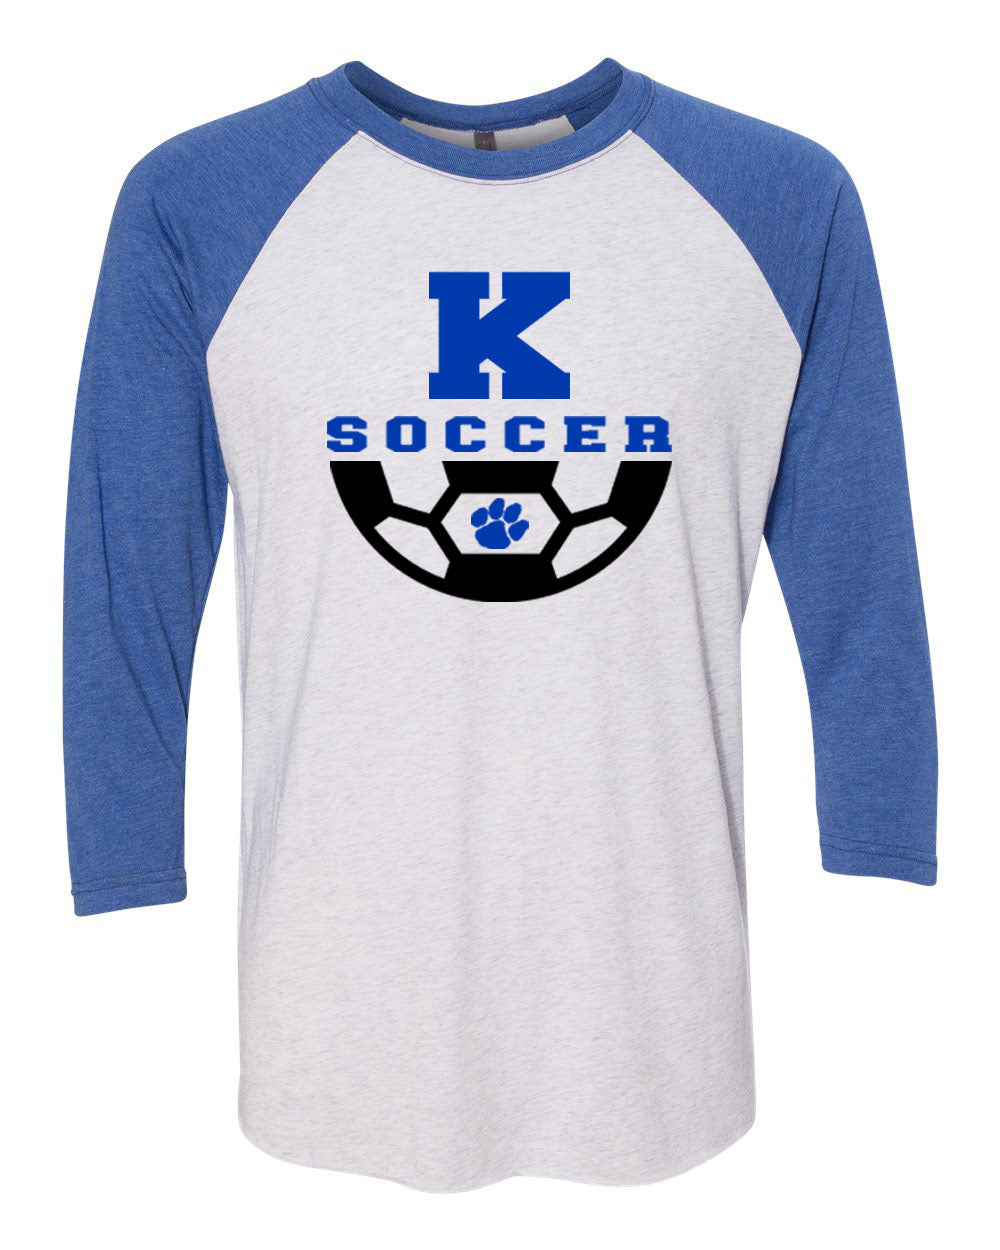 Kittatinny Soccer Design 4 Raglan Shirt